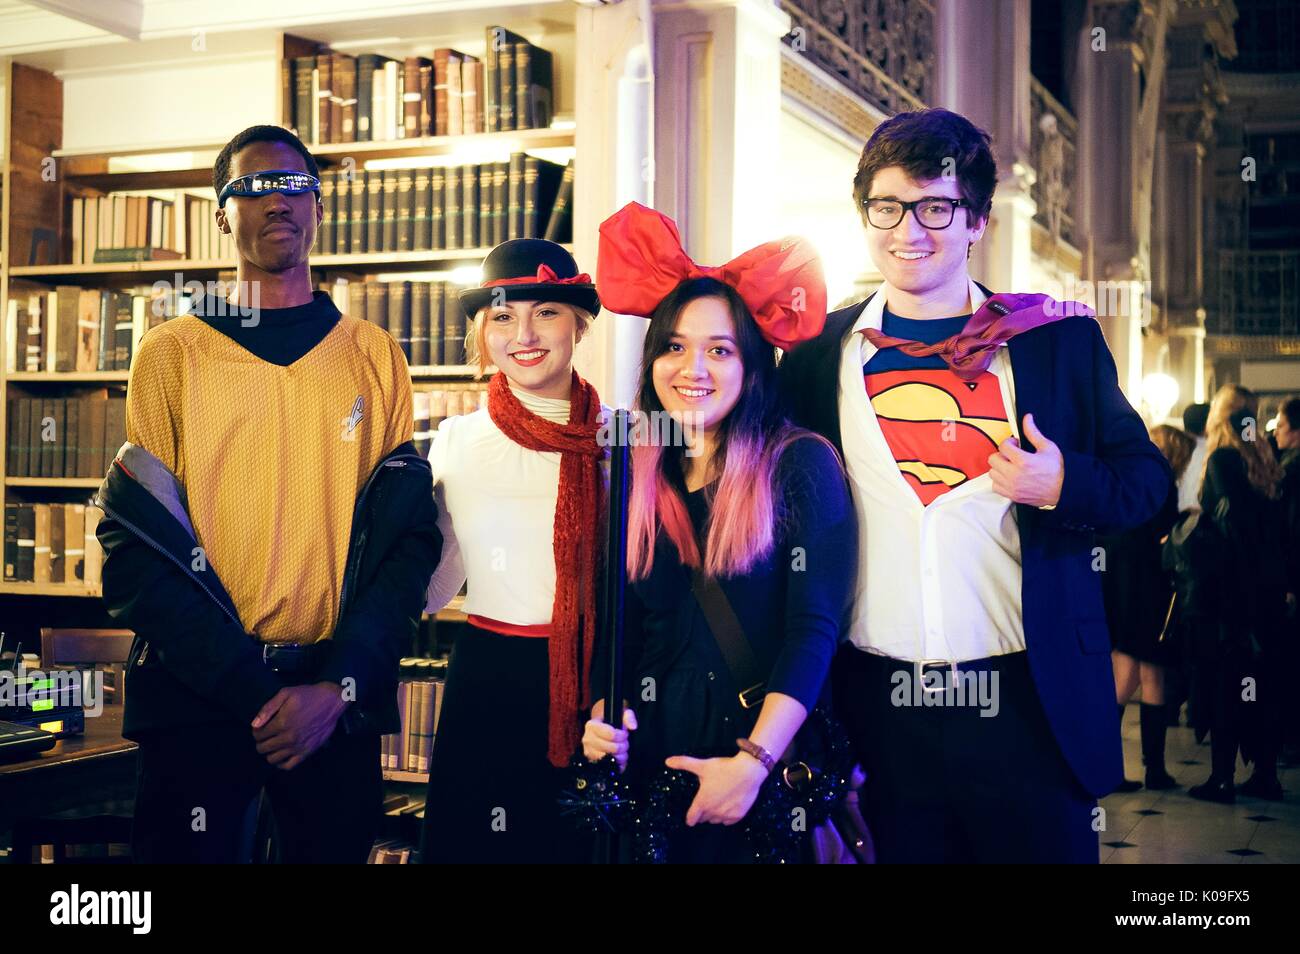 Vier Studenten sind in Kostüm und Stellen, der Junge, der auf der rechten Seite wie Superman und das Mädchen neben ihm gekleidet, trägt eine große rote Schleife auf dem Kopf, der Junge, der auf der linken Seite ist mit Sonnenbrille und das Mädchen neben ihm ist wie Mary Poppins, 2015 bekleidet. Mit freundlicher Genehmigung von Eric Chen. Stockfoto